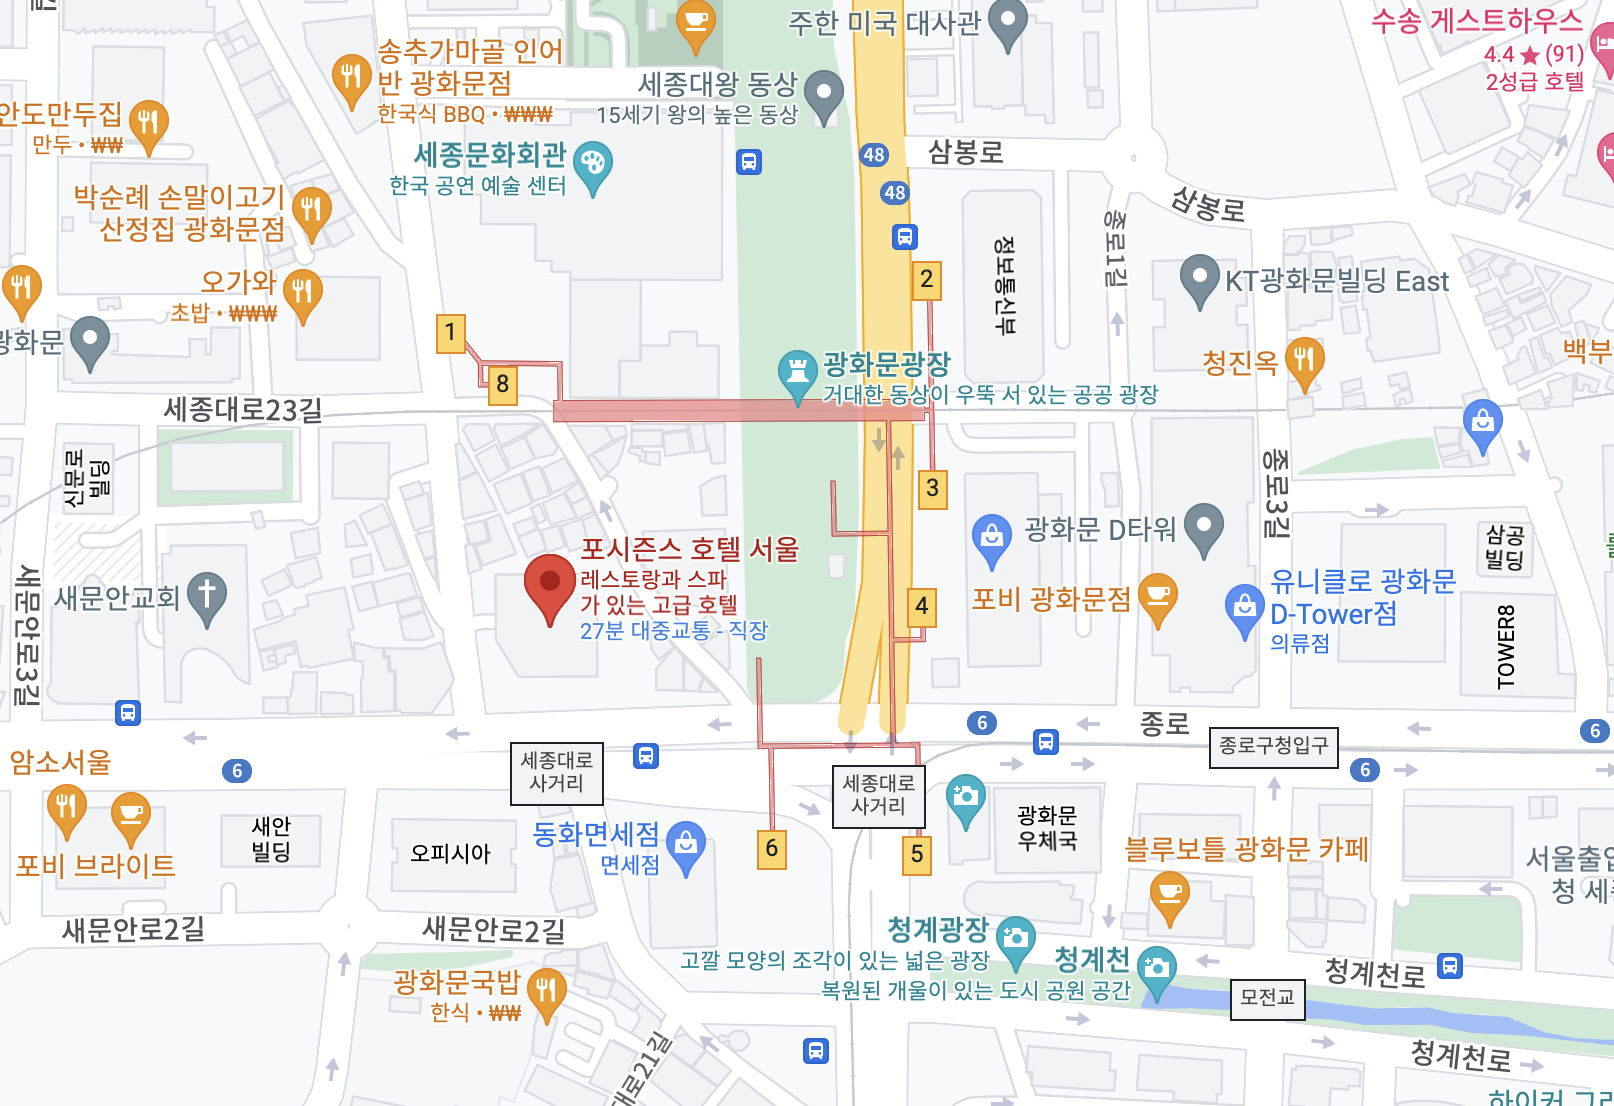 포시즌스 호텔 서울 위치 구글맵